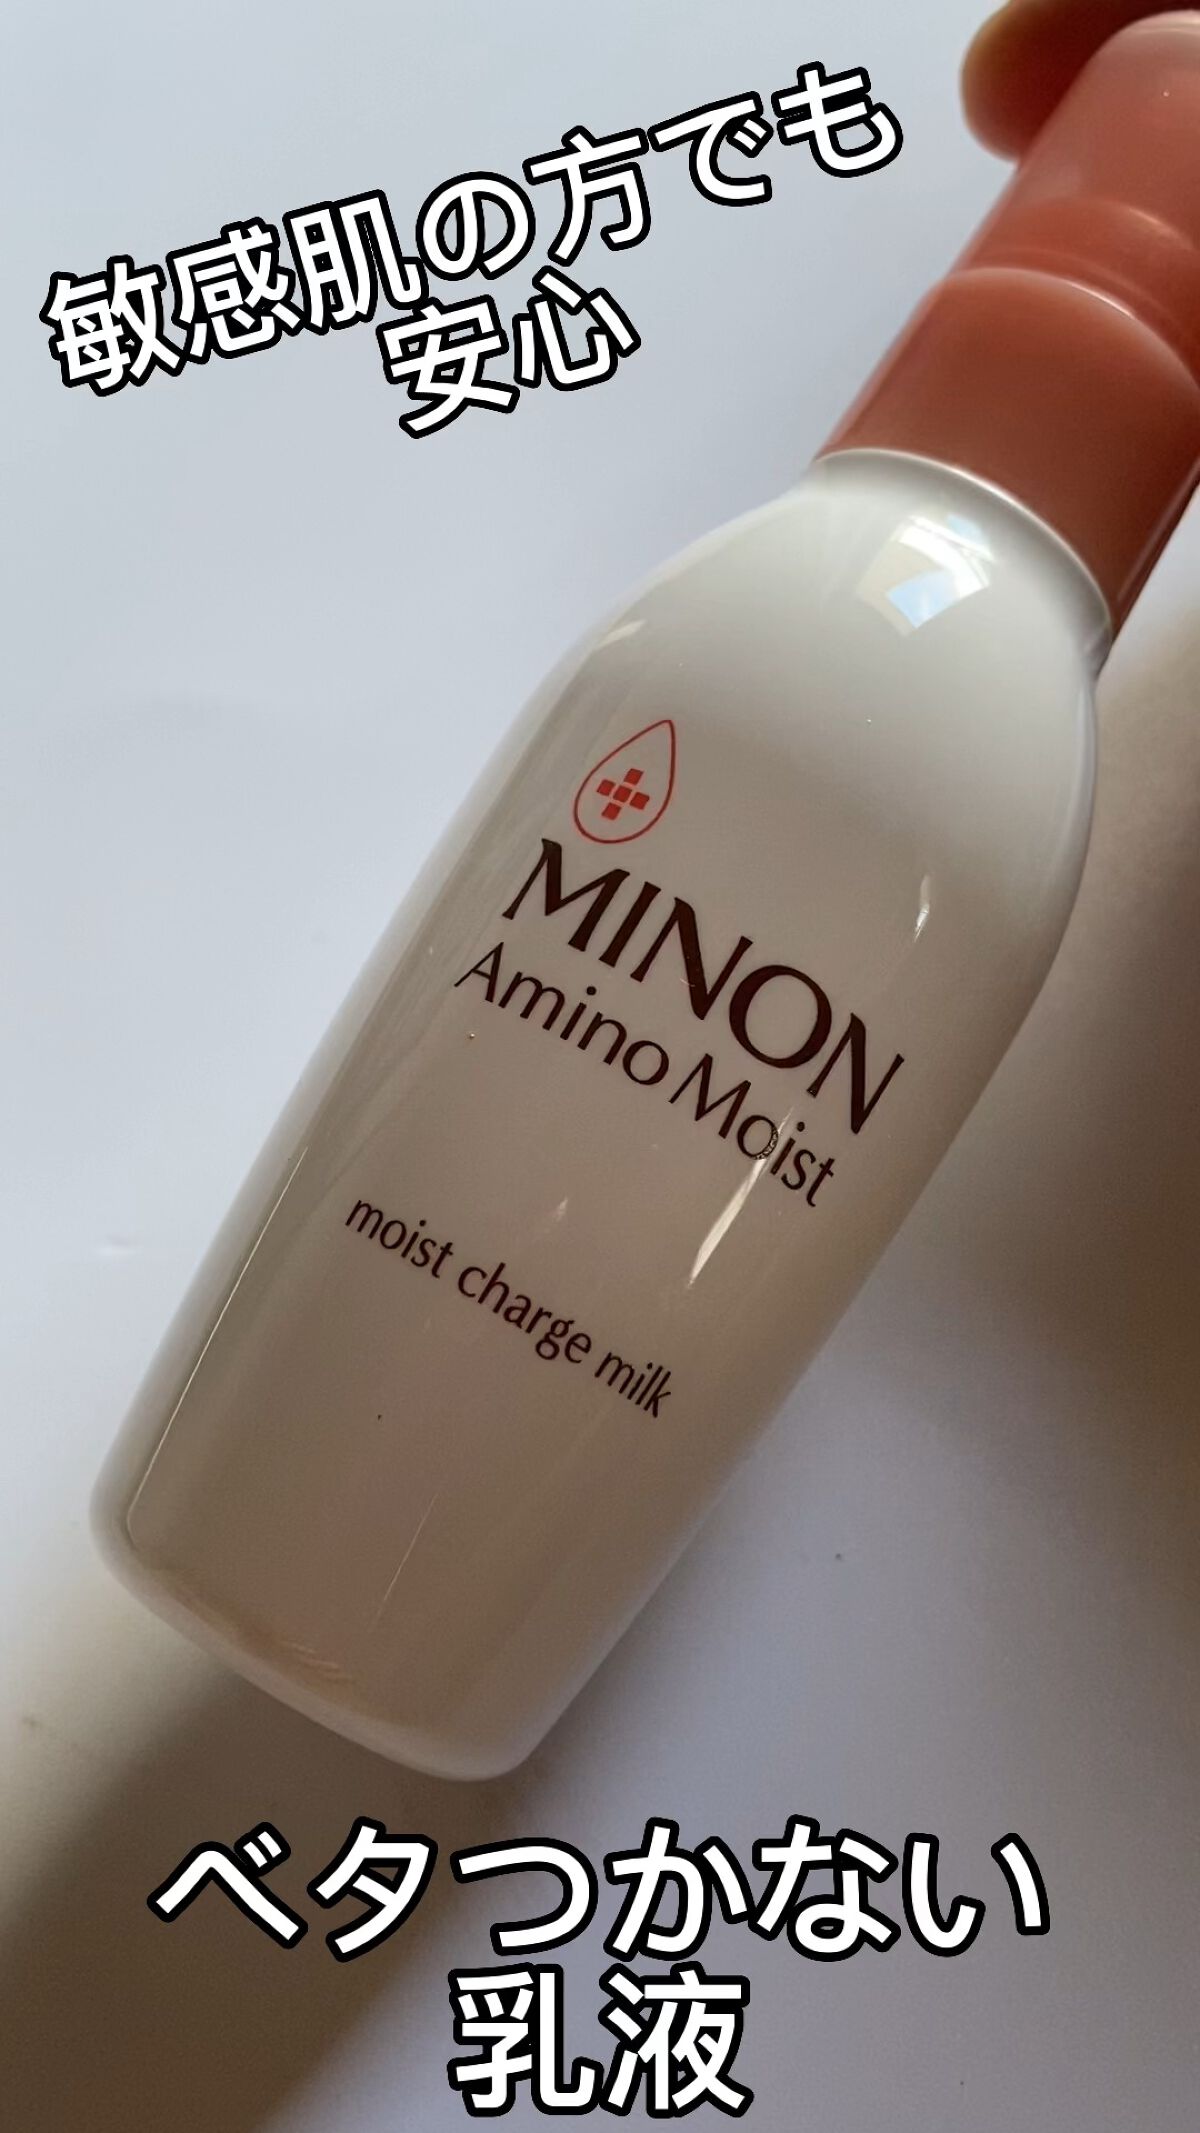 物品 MINON ミノン アミノモイスト モイストチャージミルク 保湿乳液 100g